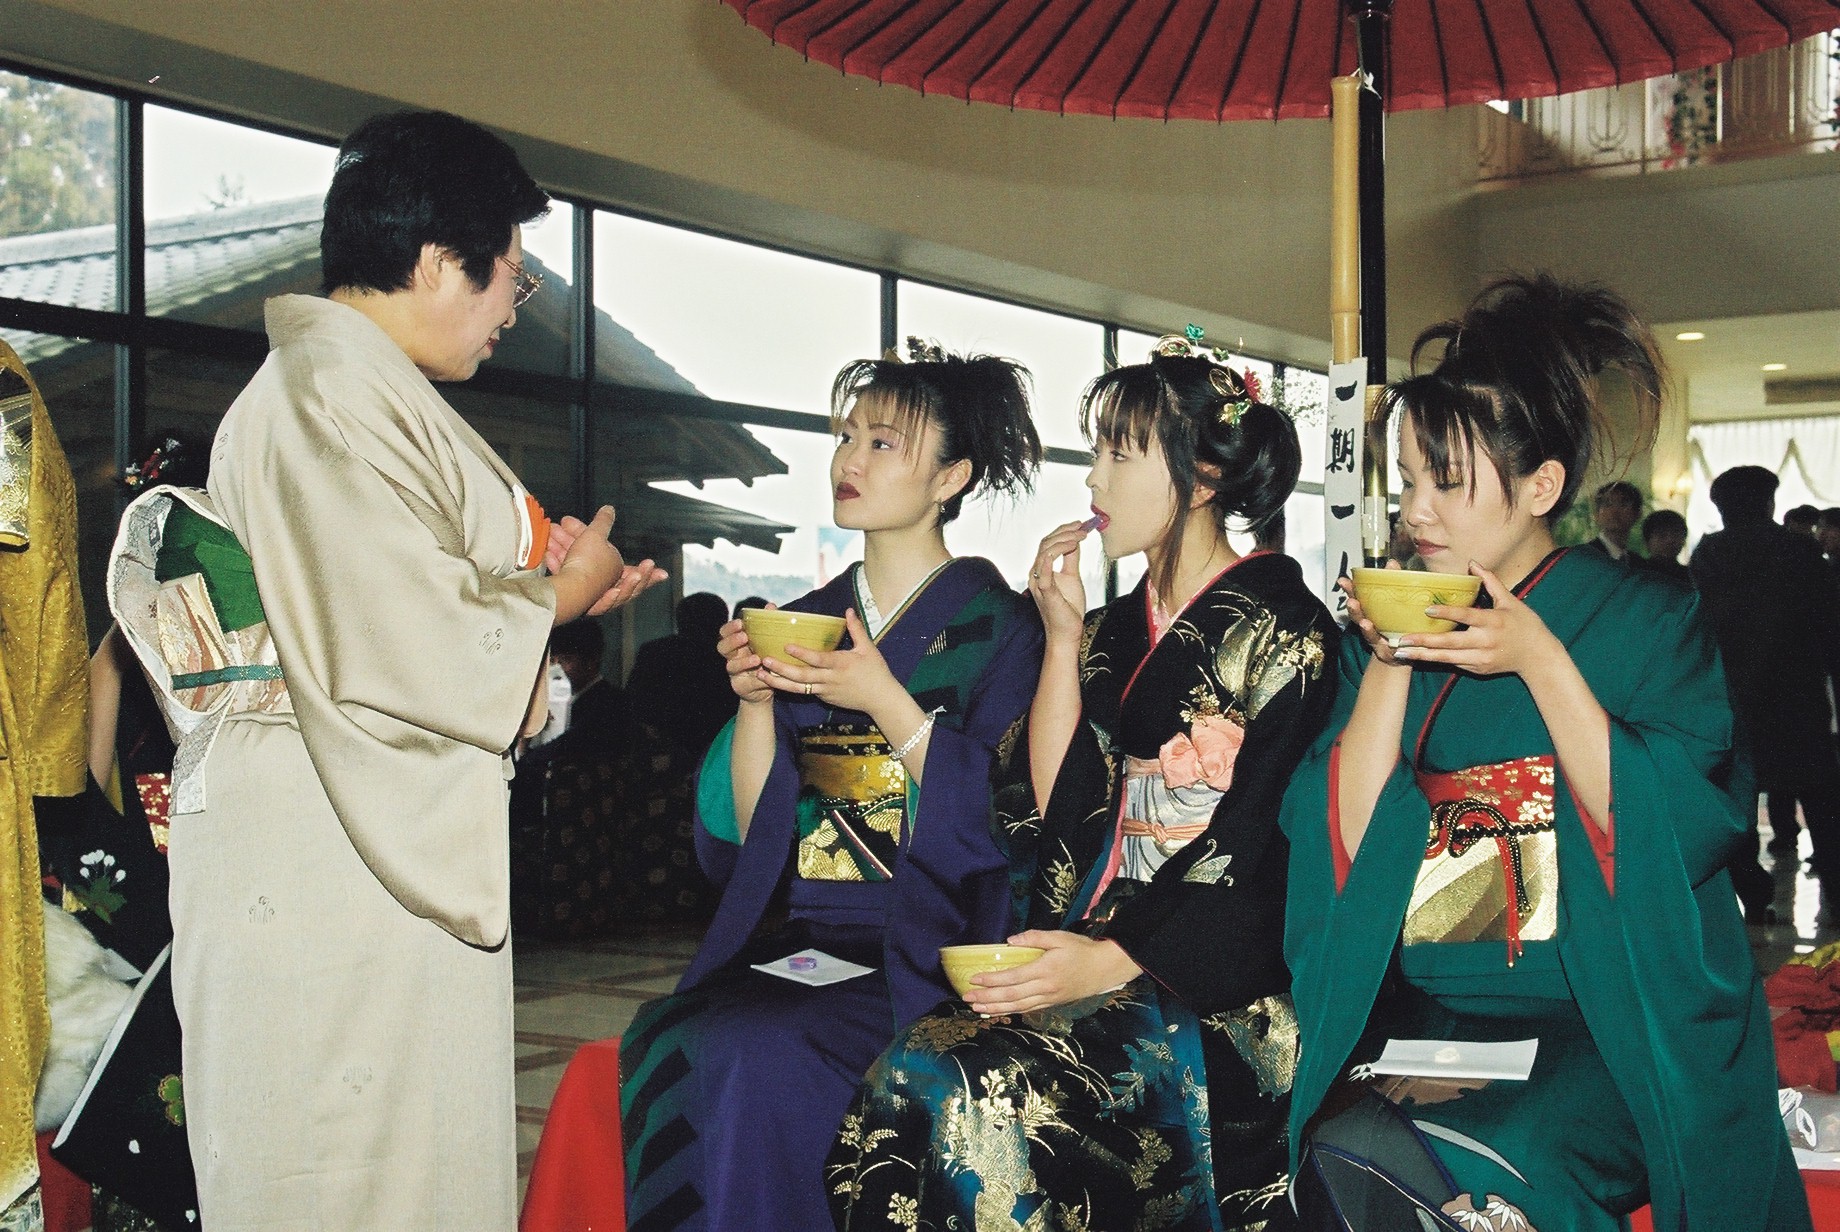 平成11年の成人式・好間地区のお茶サービス 当時流行の女性の髪形が特徴的(平成11年1月 いわき市撮影)